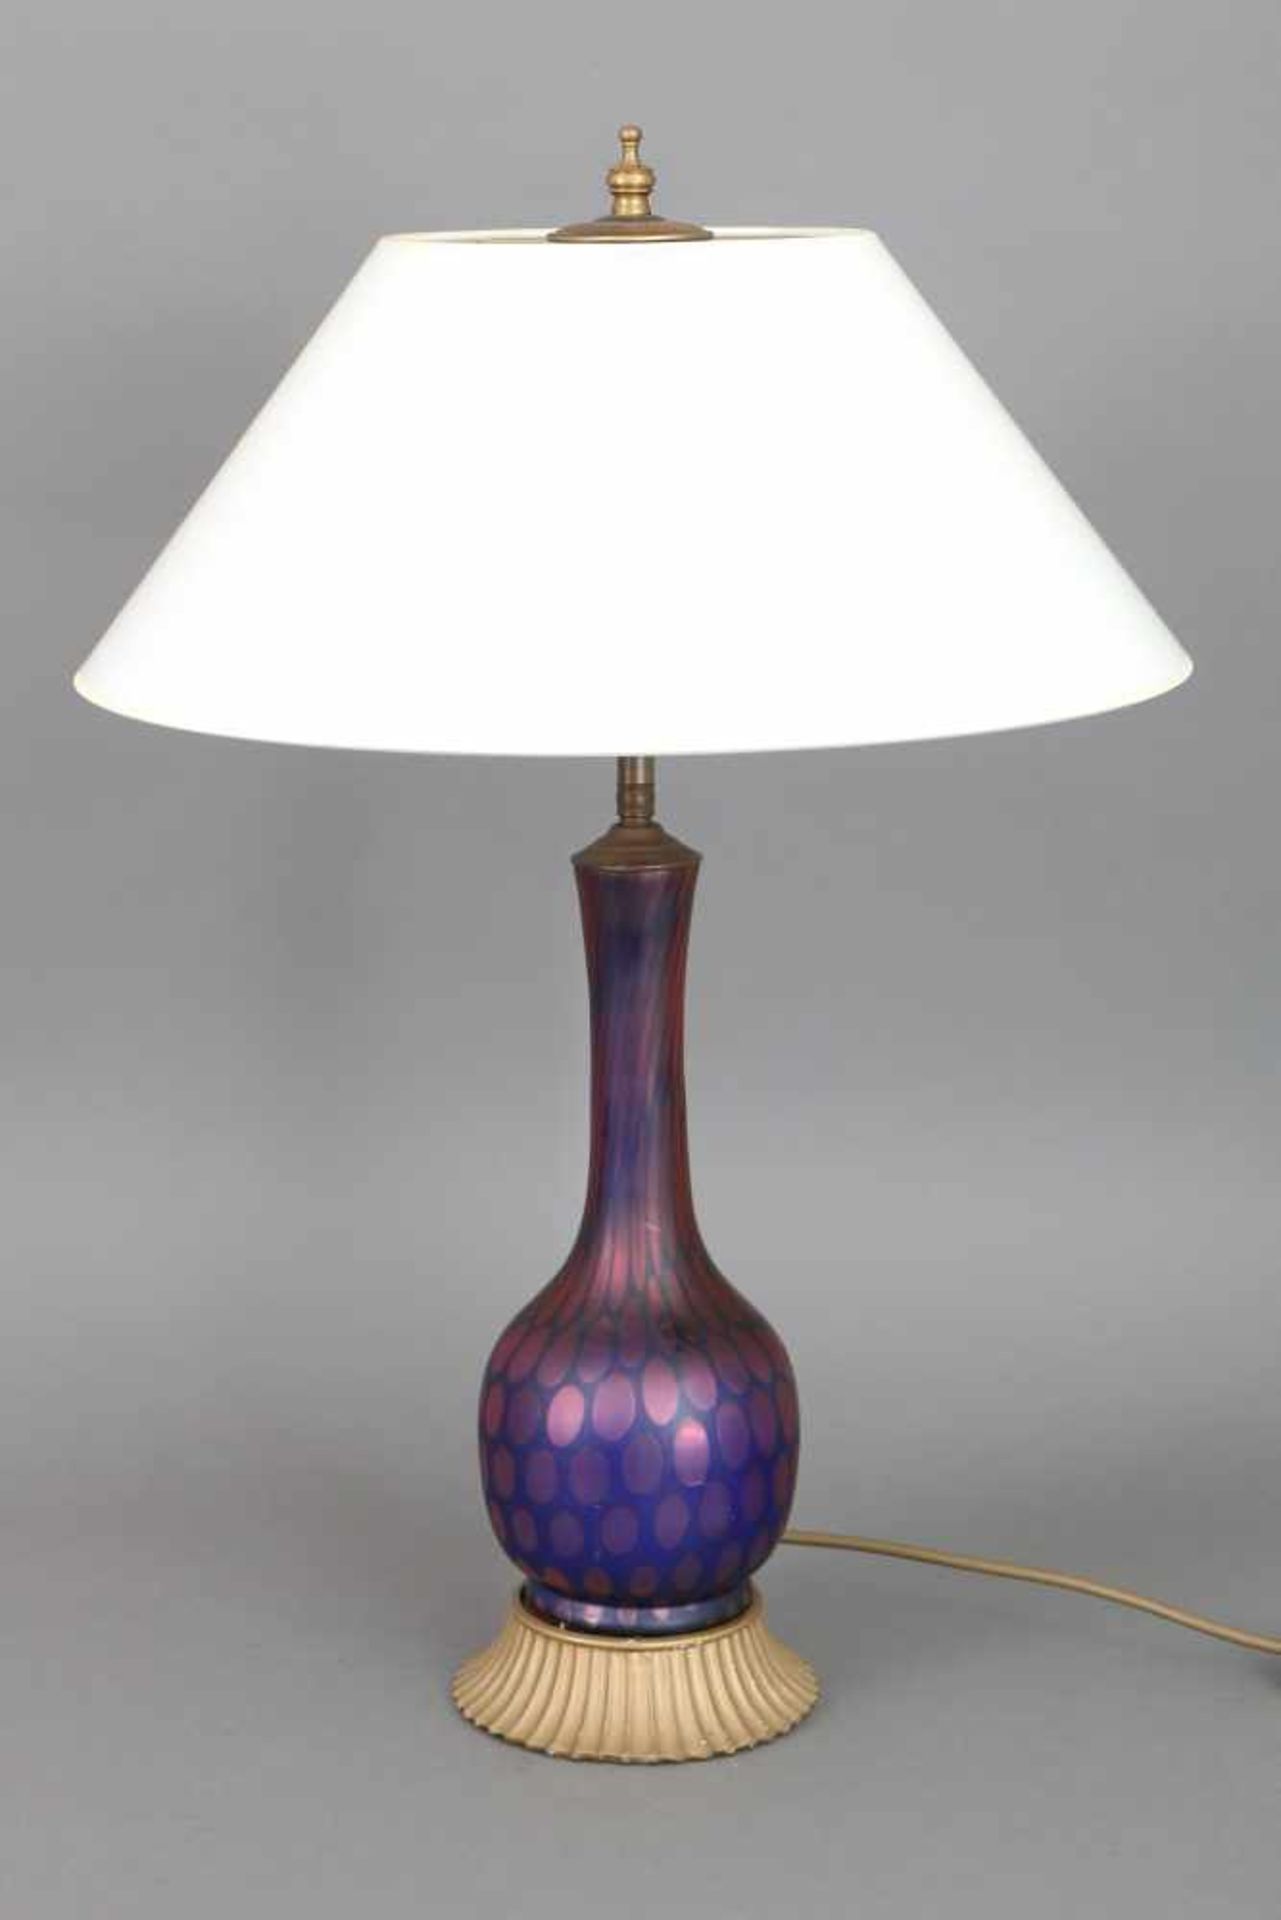 TischlampeFuß in Form einer Jugendstil Glasvase, Keulenform, blau-violettes Glas, irisierend und